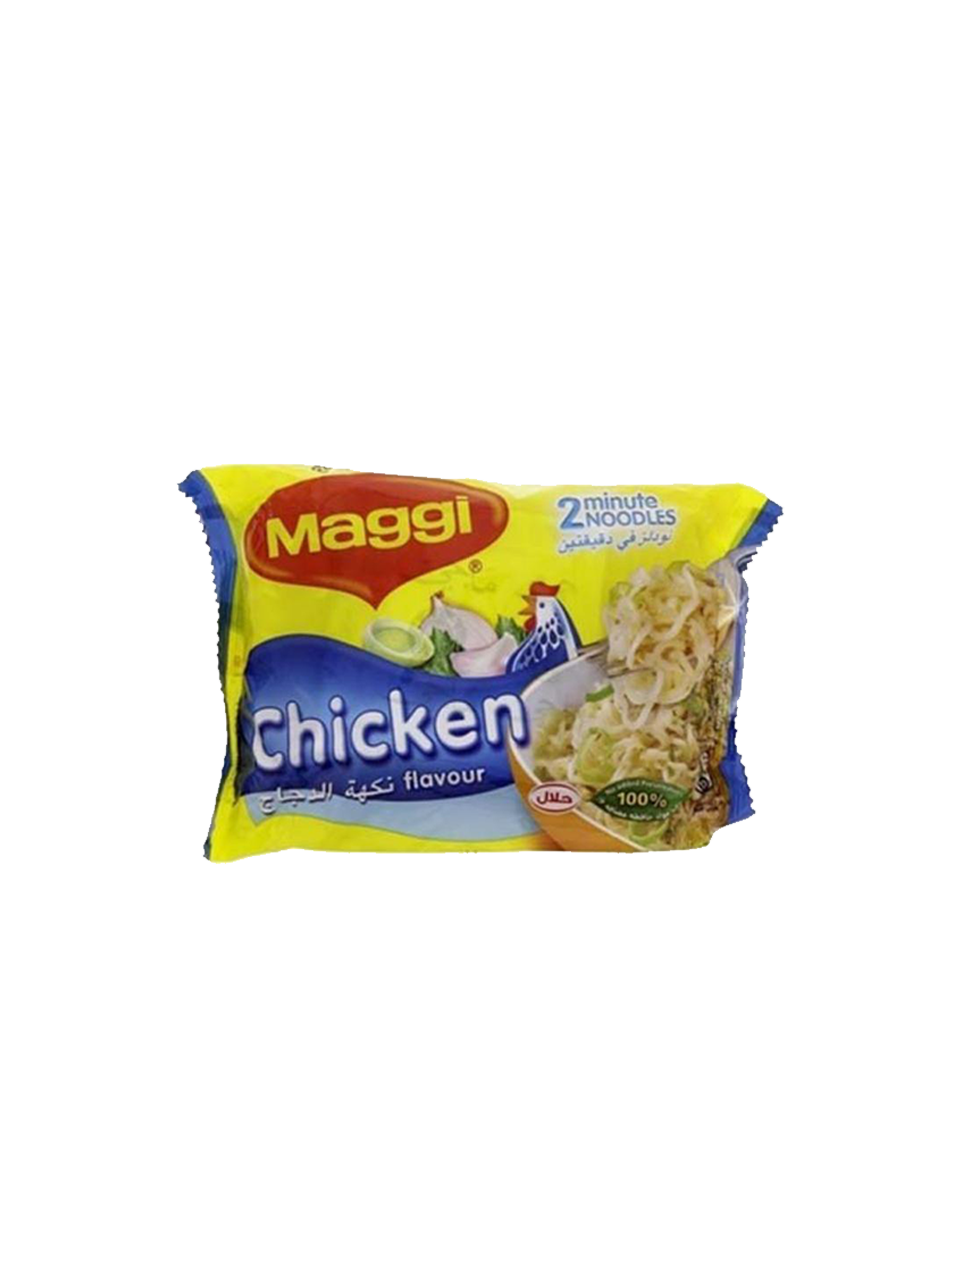 Maggi Chicken Flavor Noodles 77g